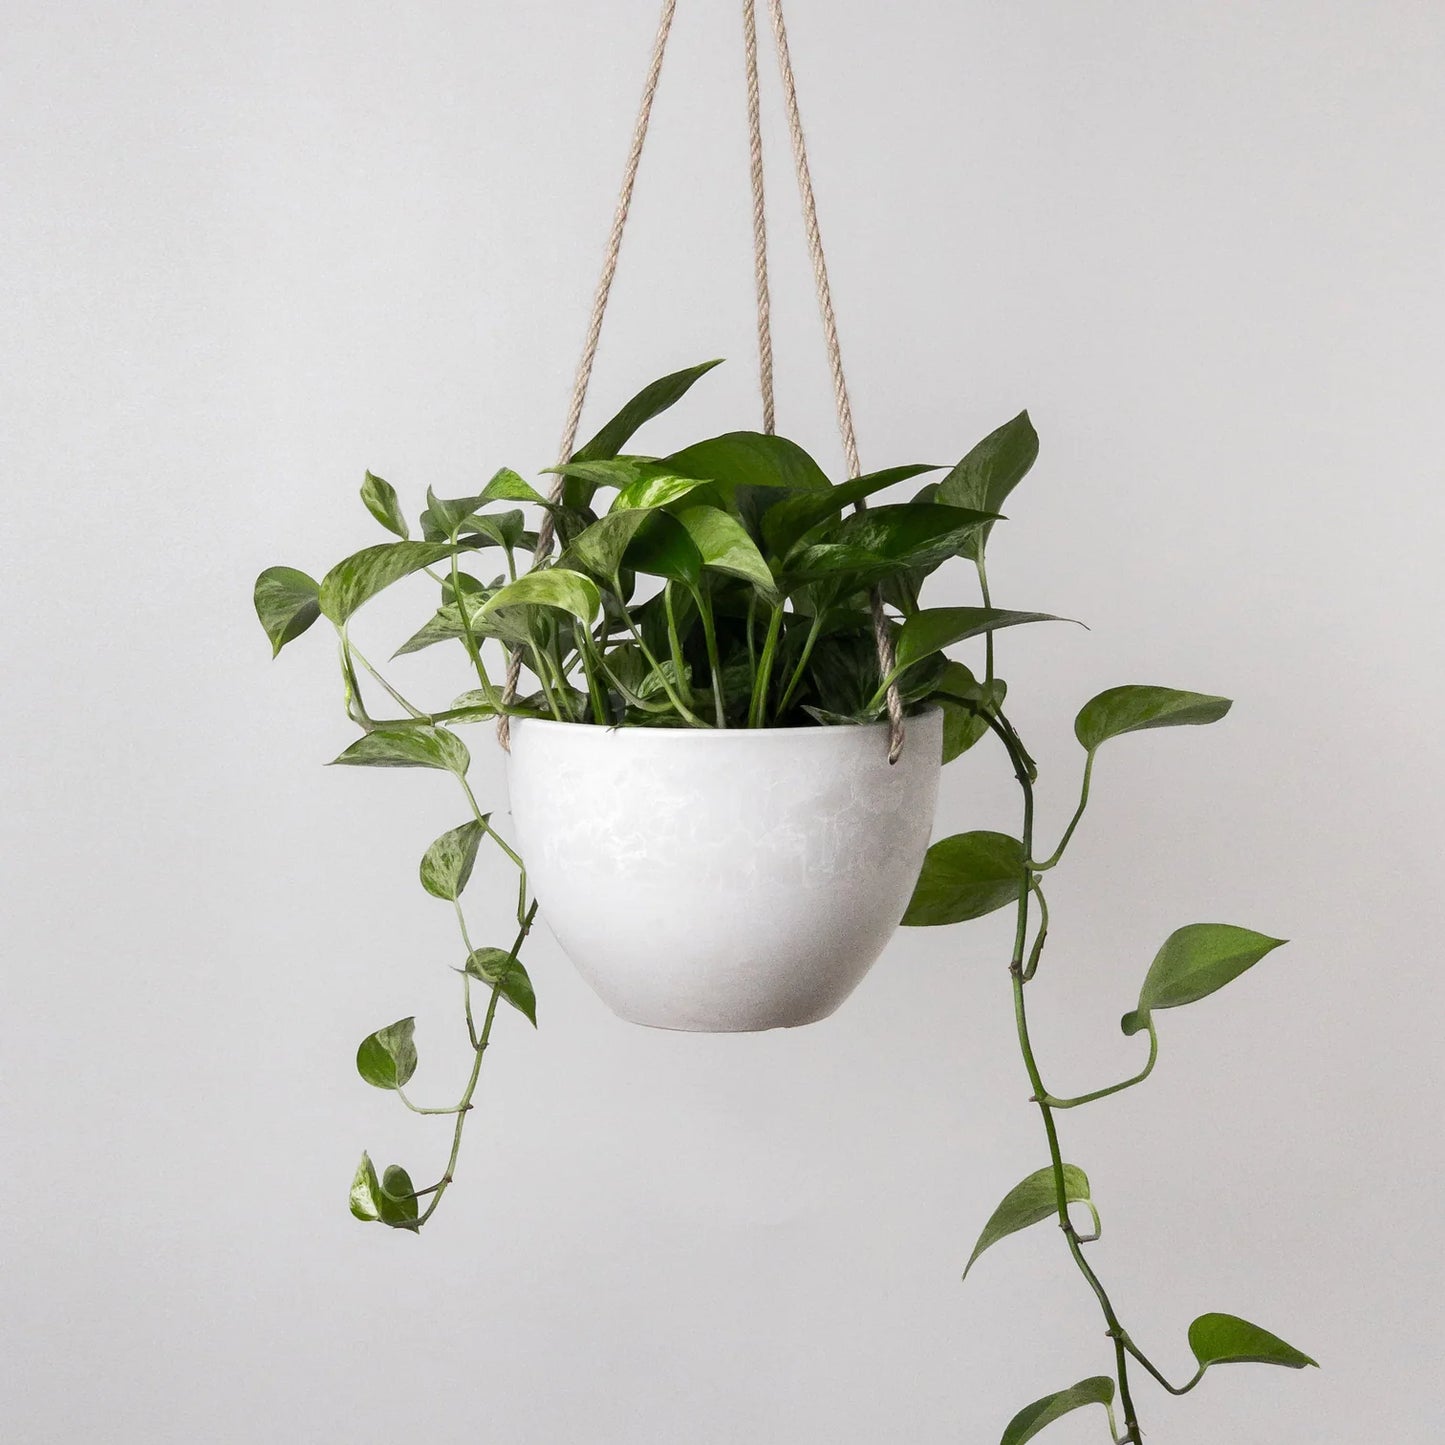 8" hanging planter